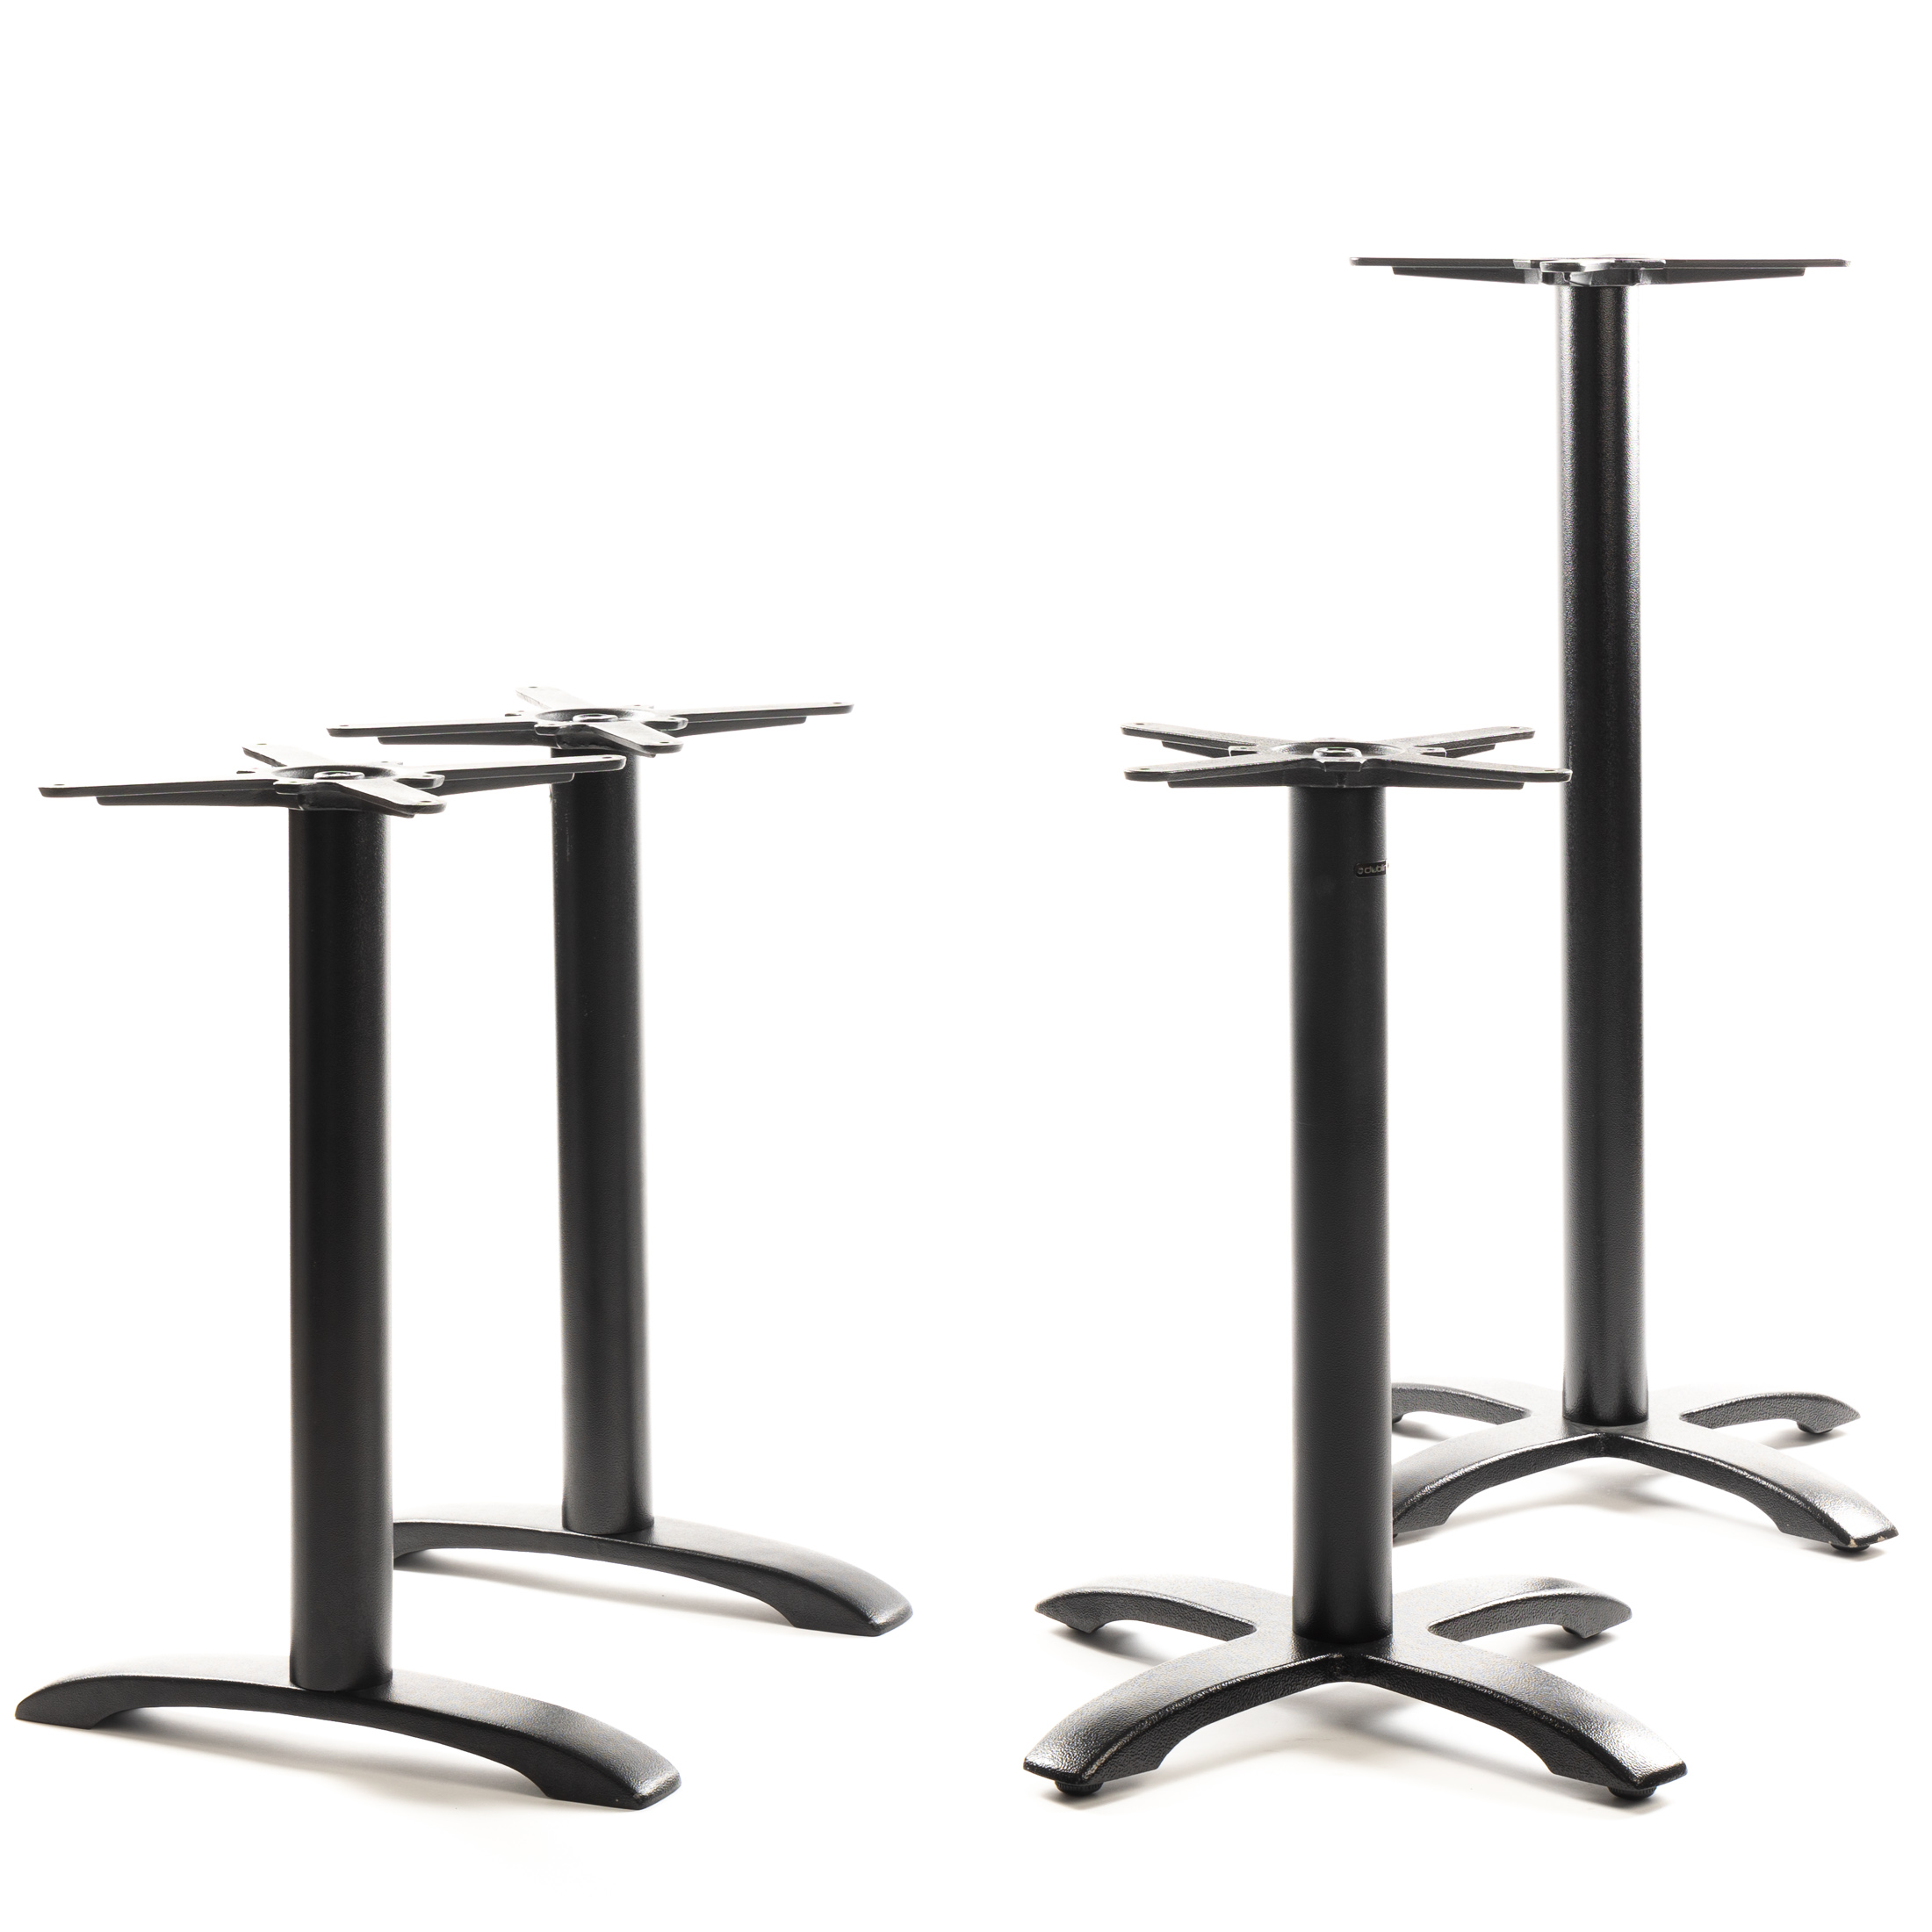 Tischgestell PJ7602 - Gusseisen - pulverbeschichtet schwarz - 4-zehiger Standfuß